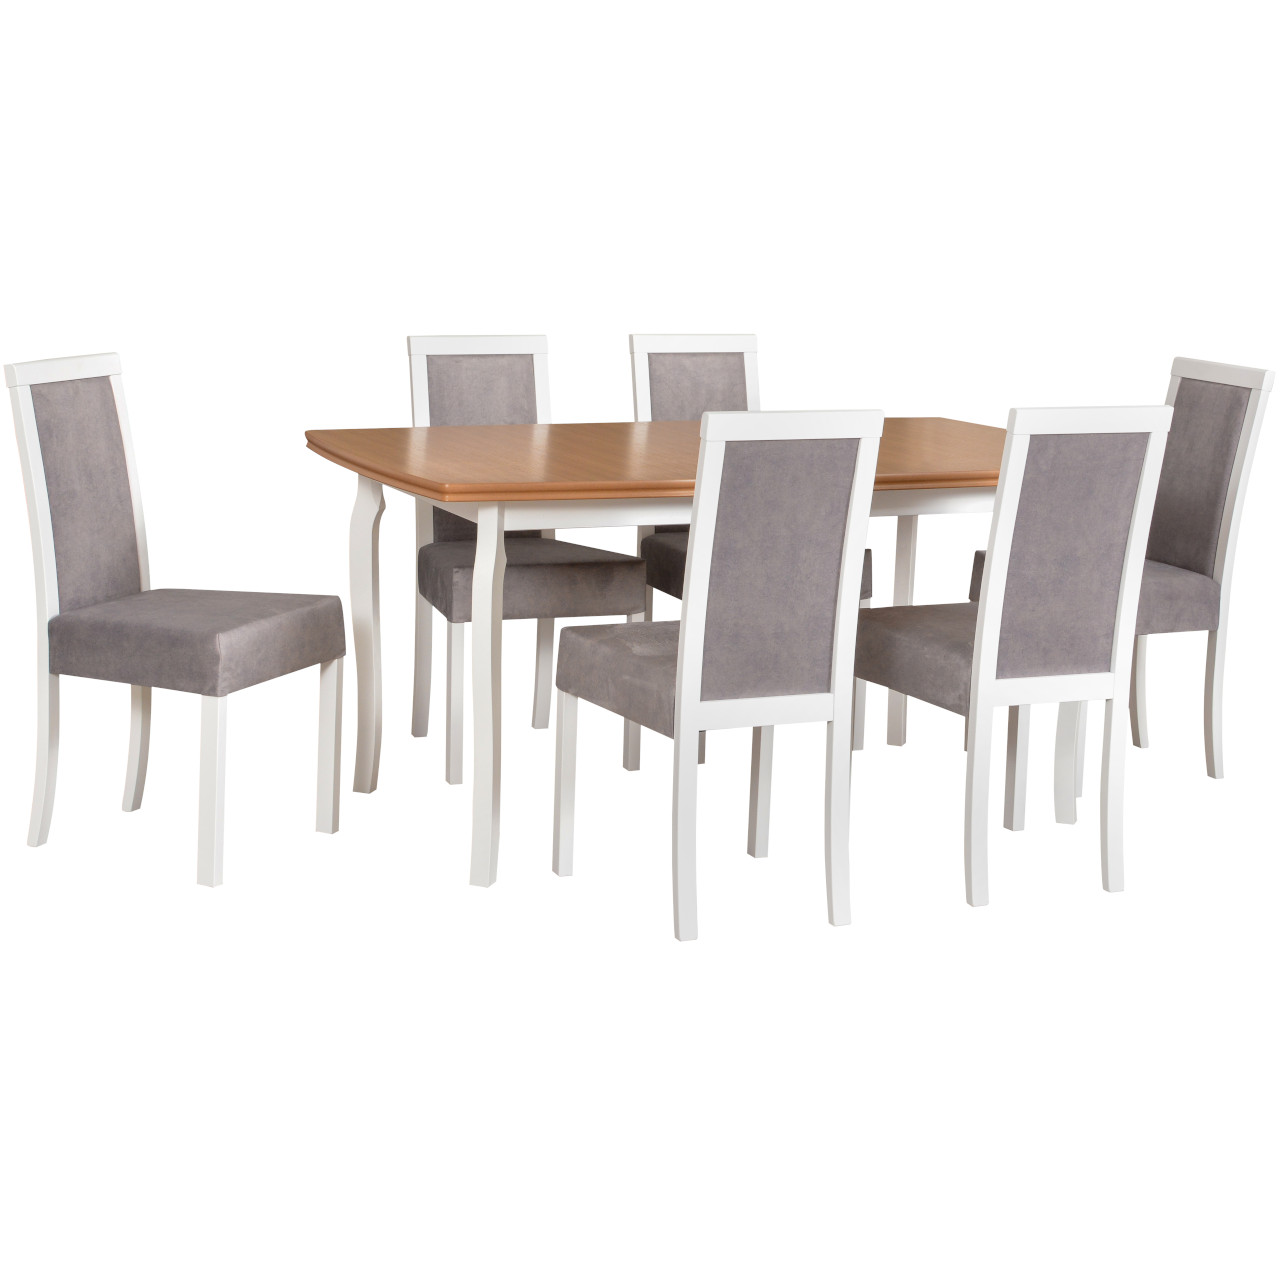 Asztal KENT 1 tölgy furnér / fehér + szék ROMA 3 (6 db) fehér / 20B